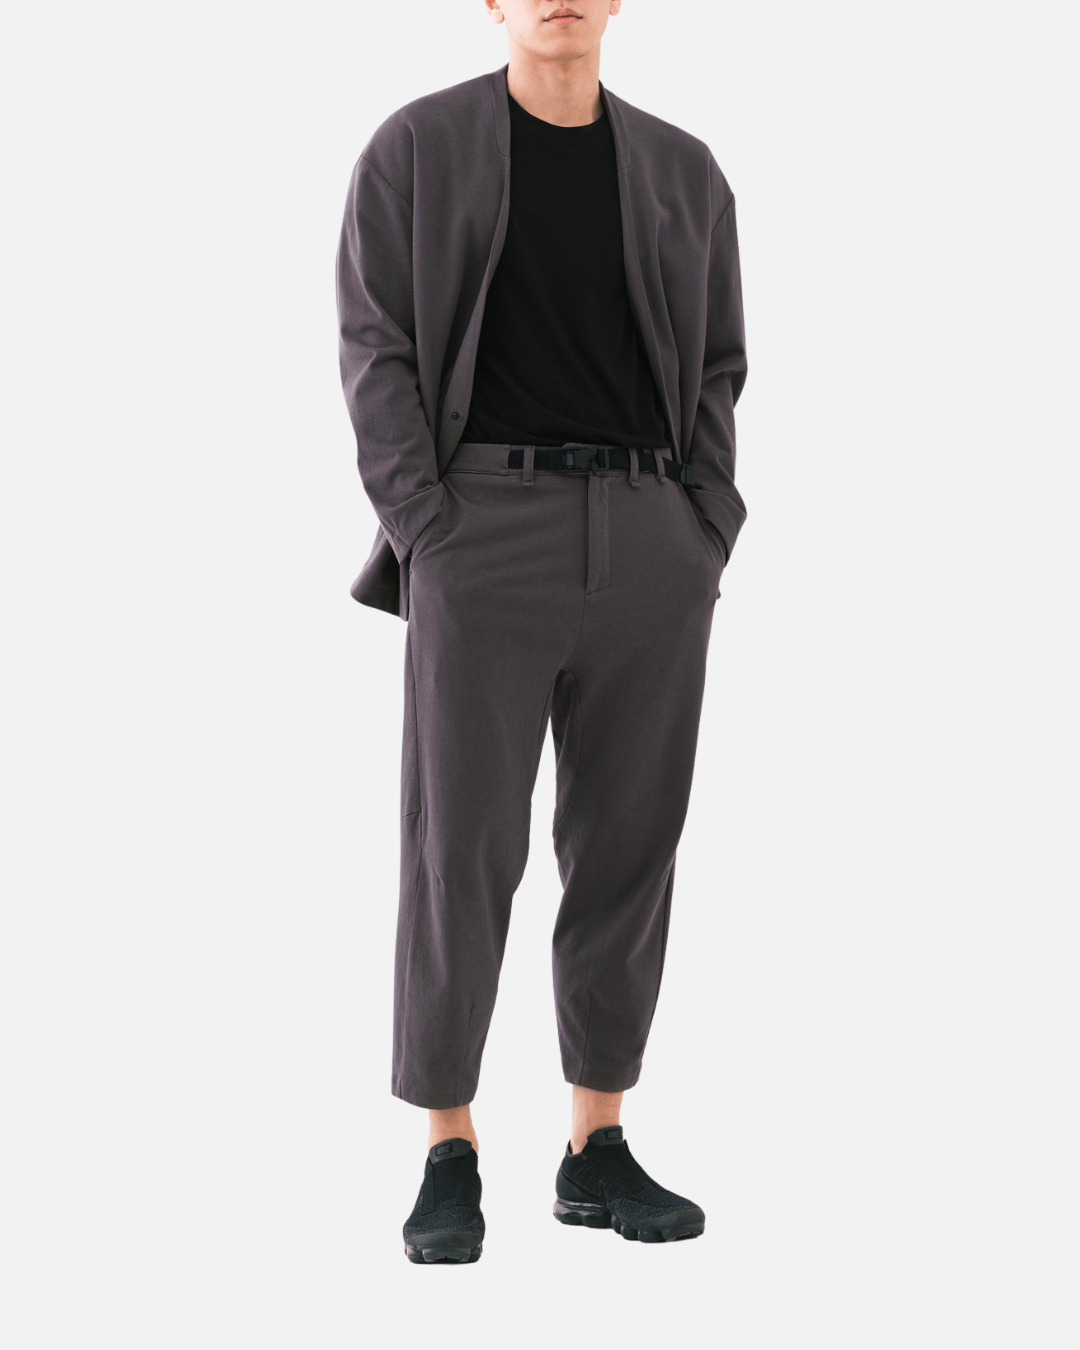 Cloud Nine Trousers - Mauve Grey - XL